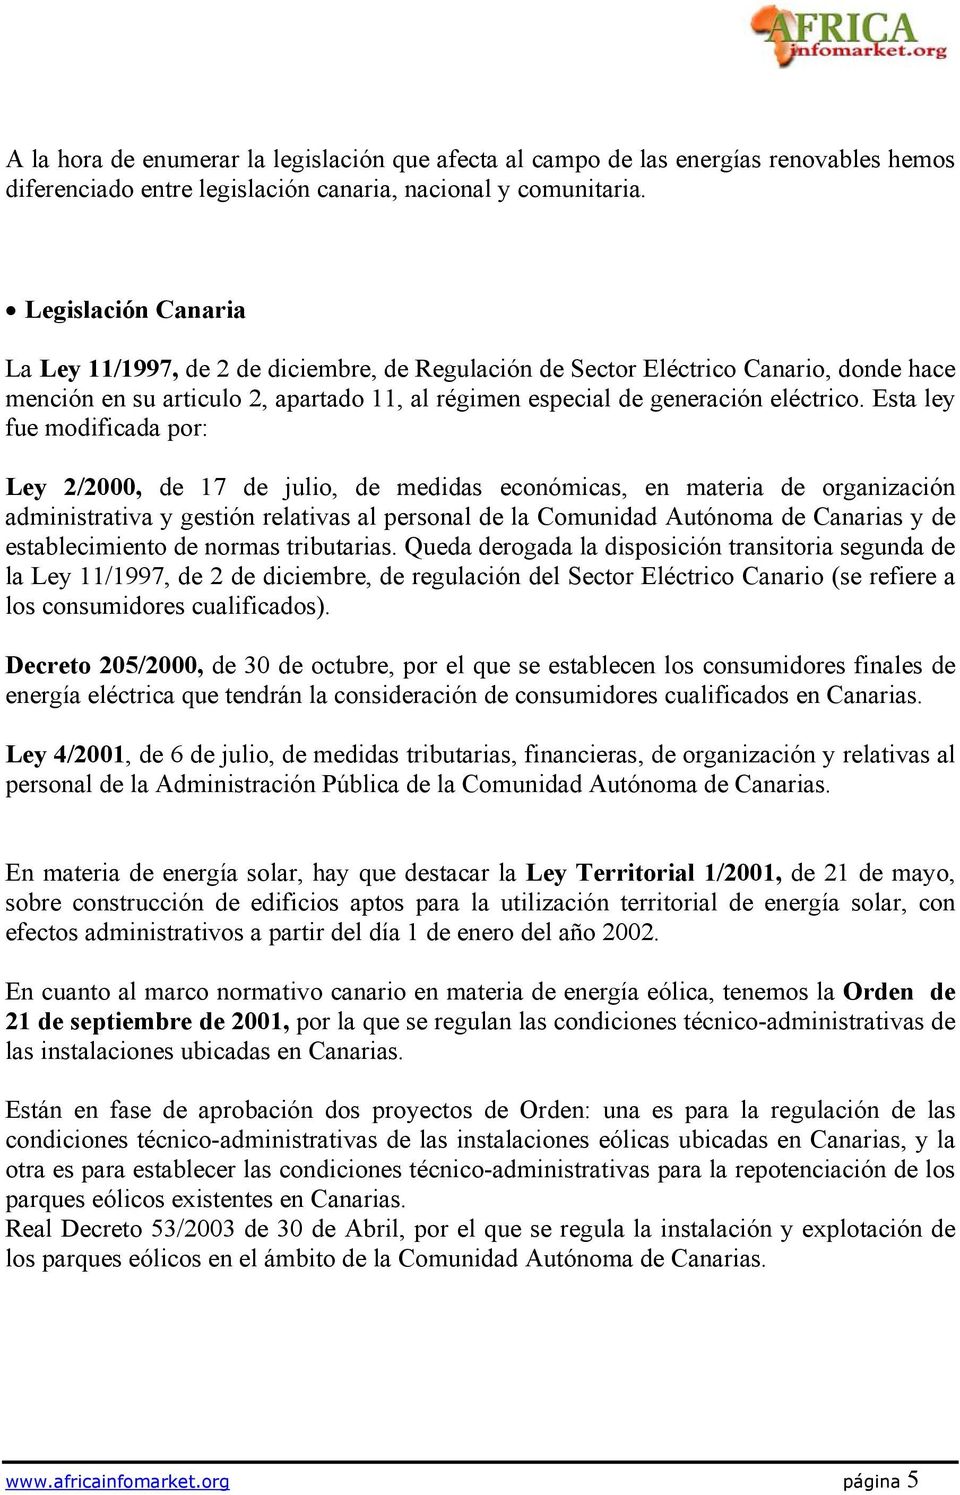 Esta ley fue modificada por: Ley 2/2000, de 17 de julio, de medidas económicas, en materia de organización administrativa y gestión relativas al personal de la Comunidad Autónoma de Canarias y de